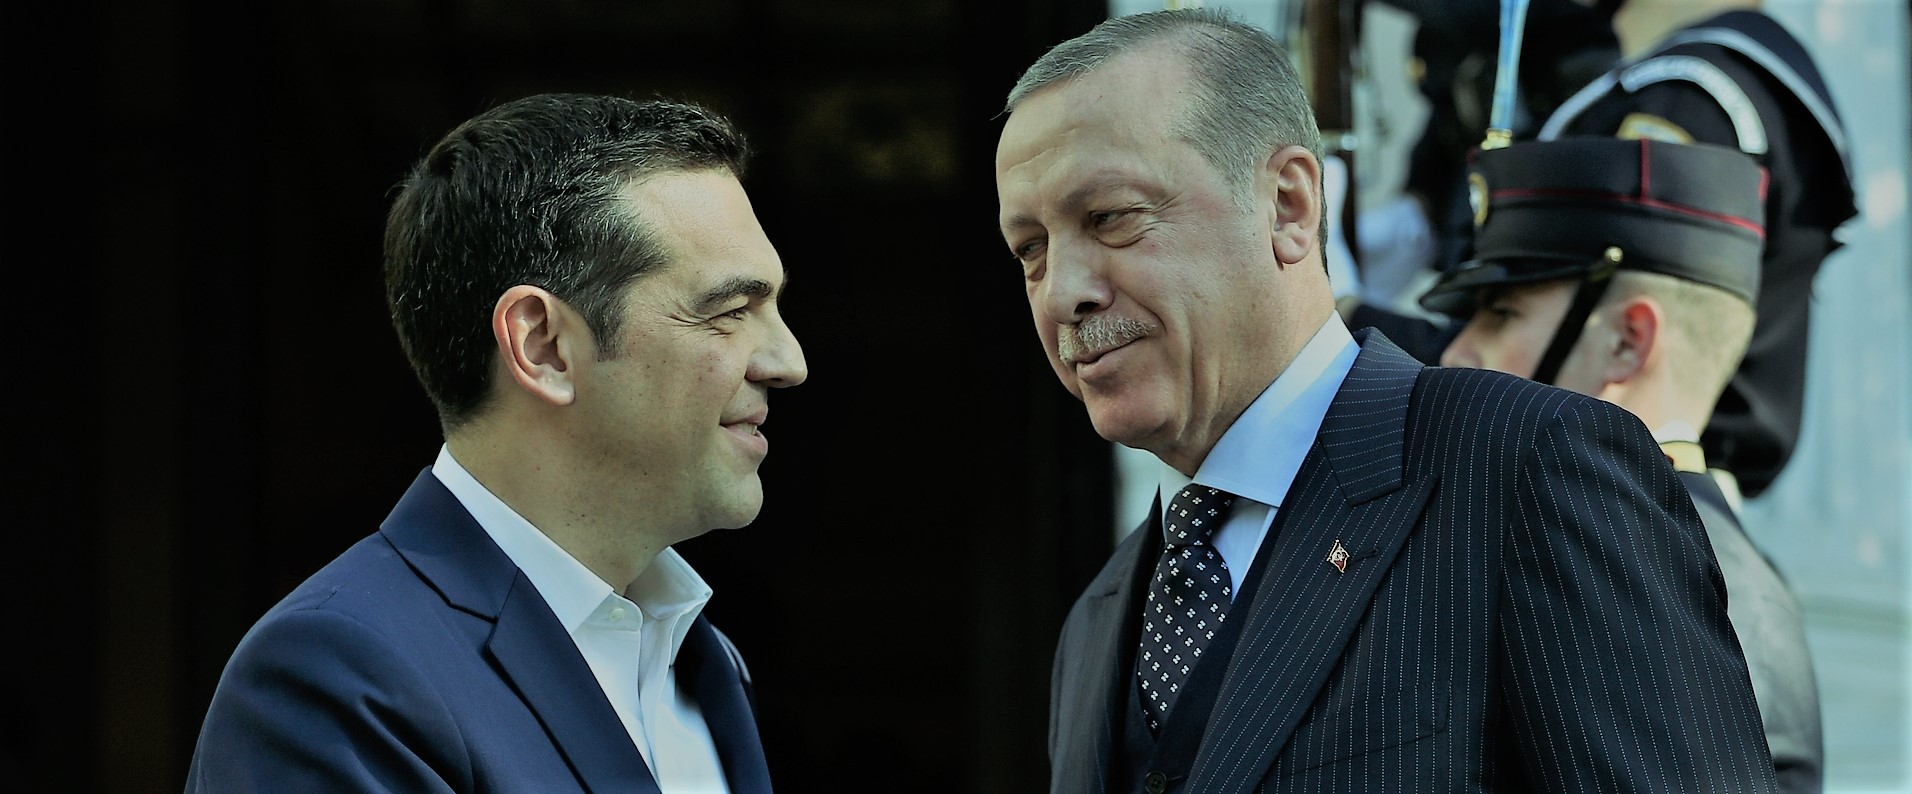 ΑΠΟΚΛΕΙΣΤΙΚΟ: Η Τουρκία ζήτησε από την Ελλάδα να πάνε στην Χάγη για αλλαγή του καθεστώτος στο Αιγαίο! – Αρνήθηκε η Αθήνα